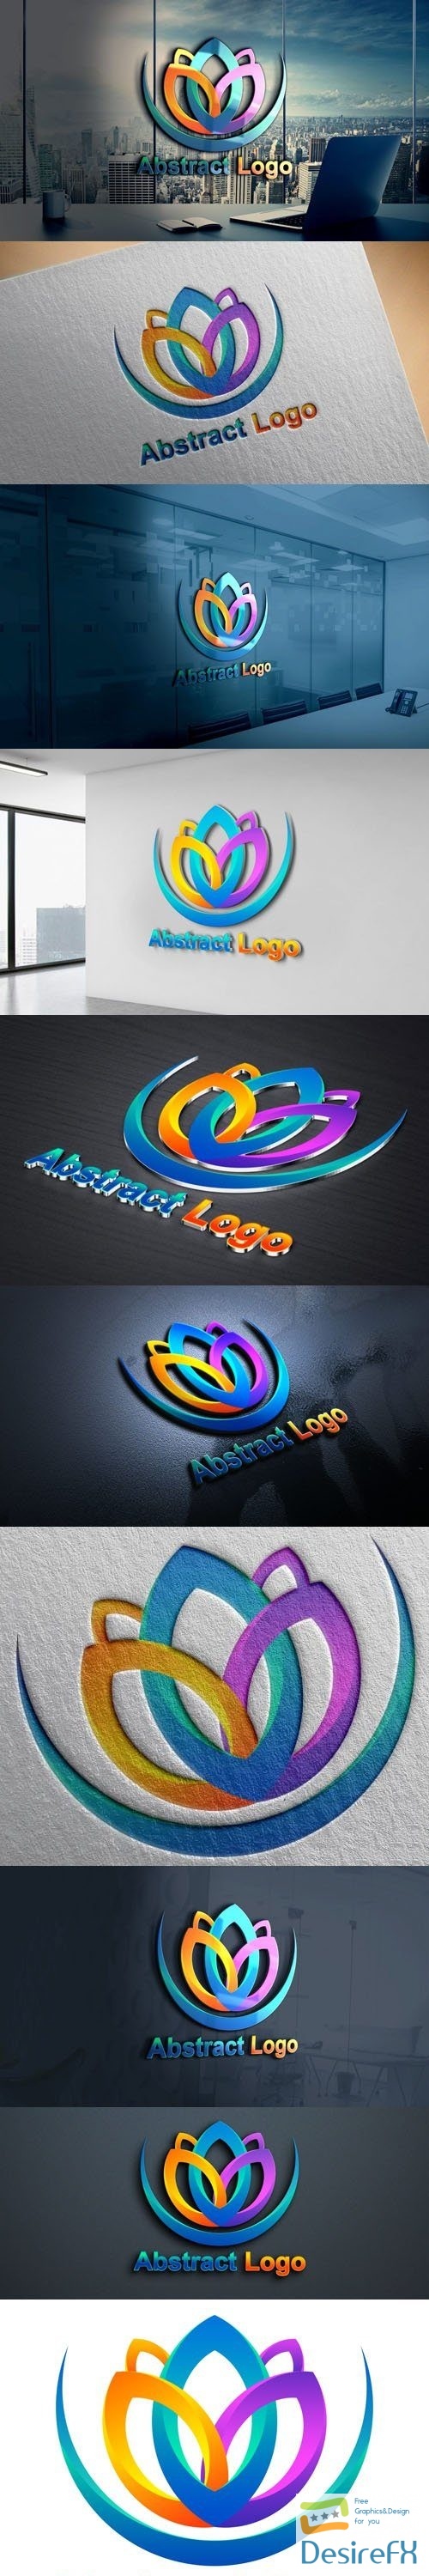 Abstract Logo Design PSD Template